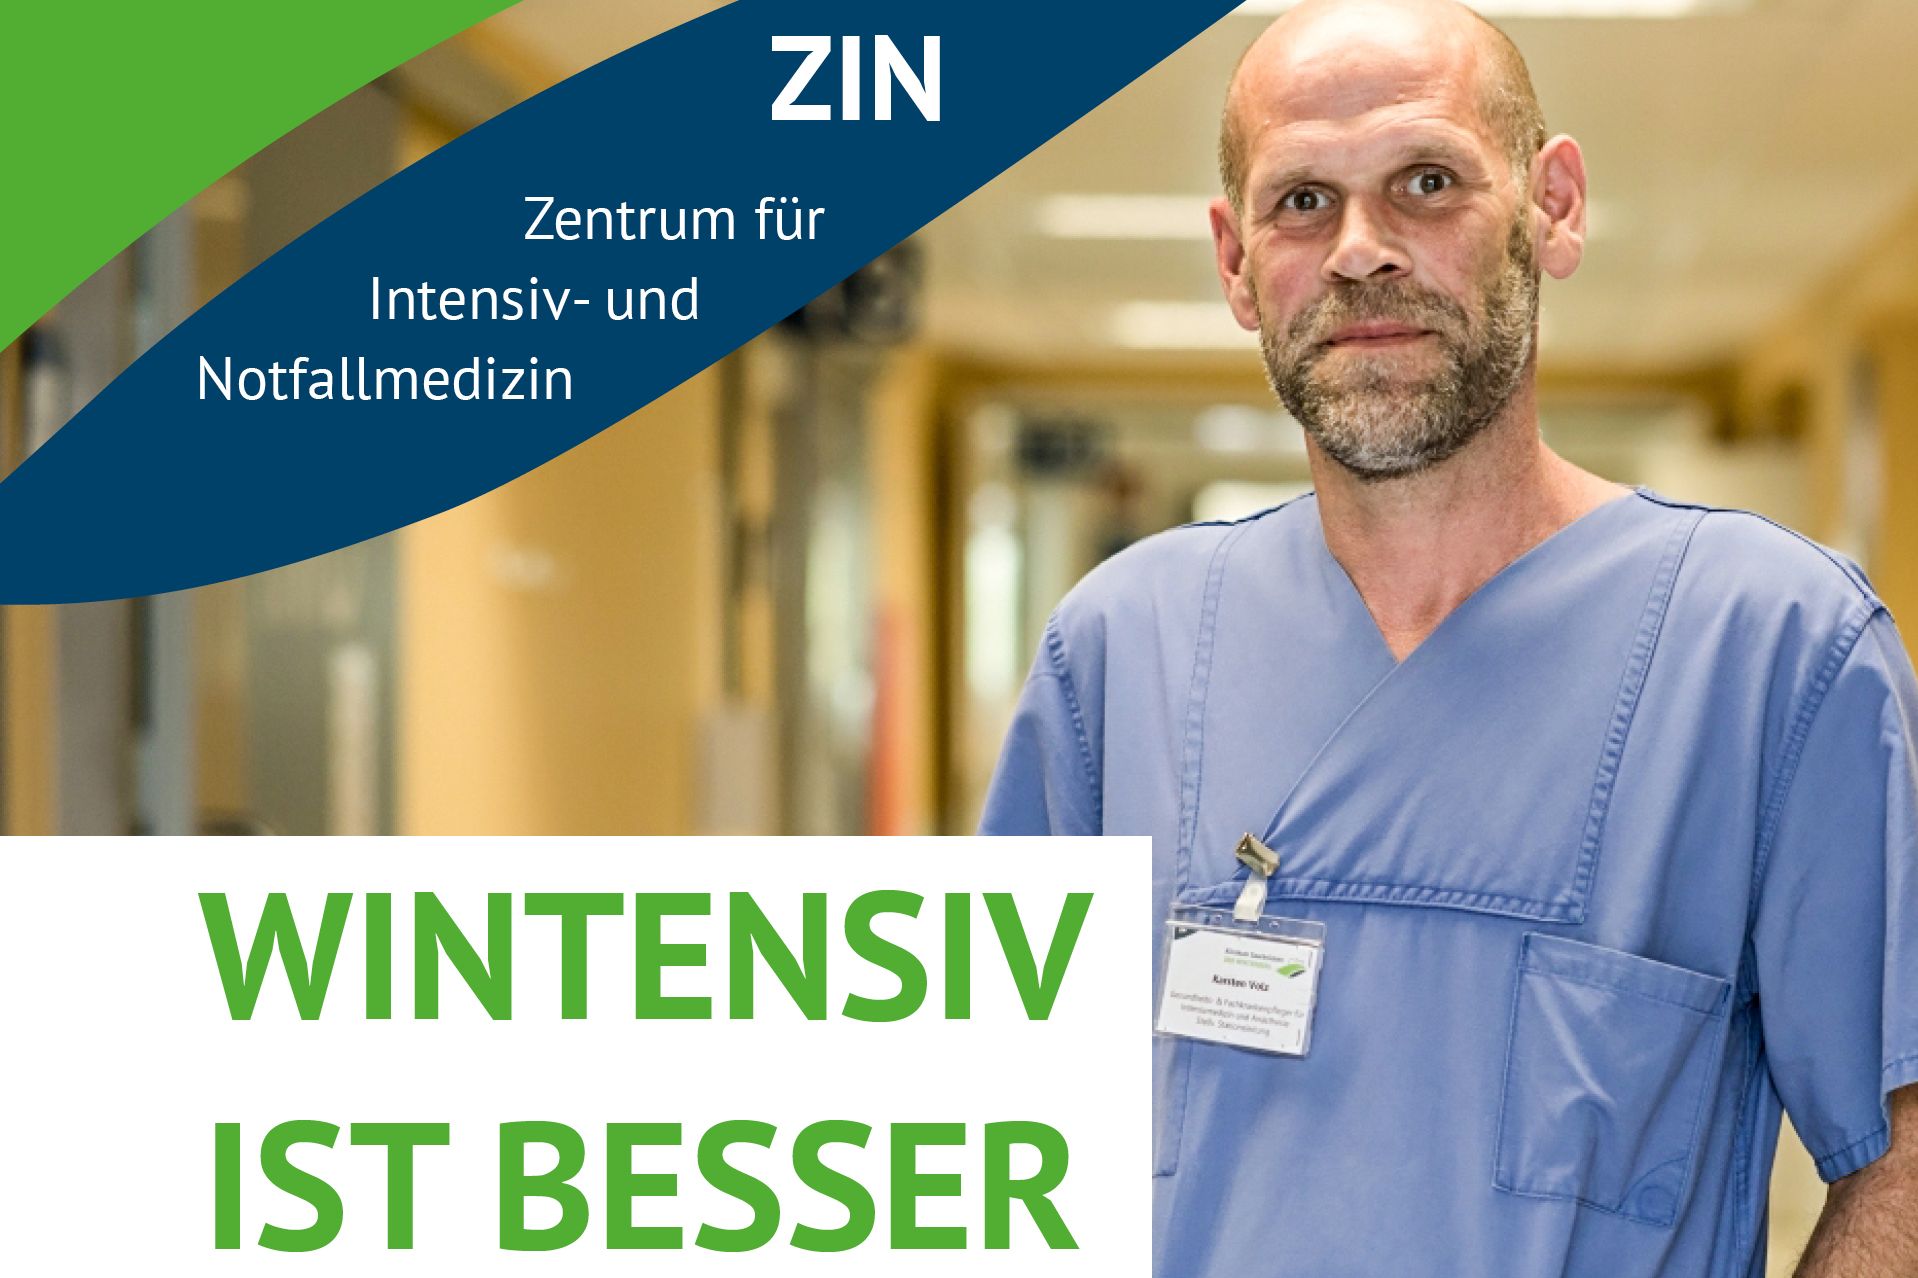 Motiv aus der Kampagne "Wintensiv ist besser" im Klinikum Saarbrücken: Karsten Volz, Intensivstation 10, aus dem Team Winterberg.